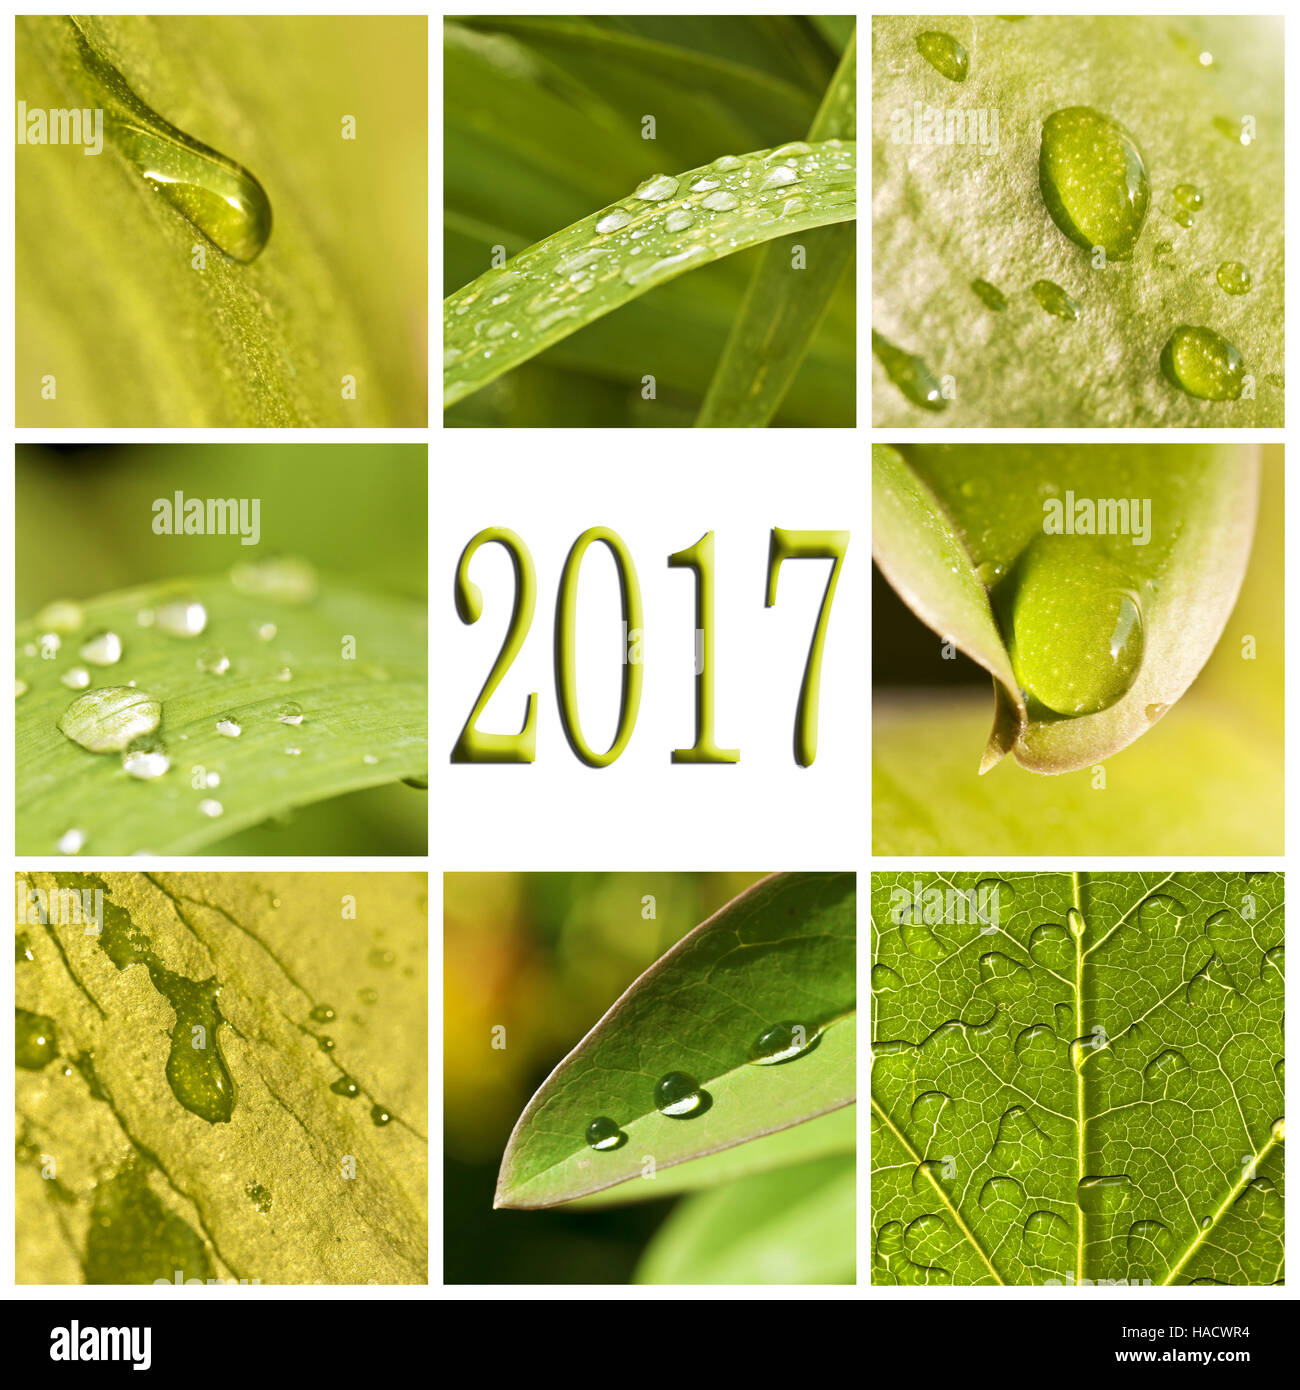 2017, hojas verdes y gotas de lluvia photo collage Foto de stock